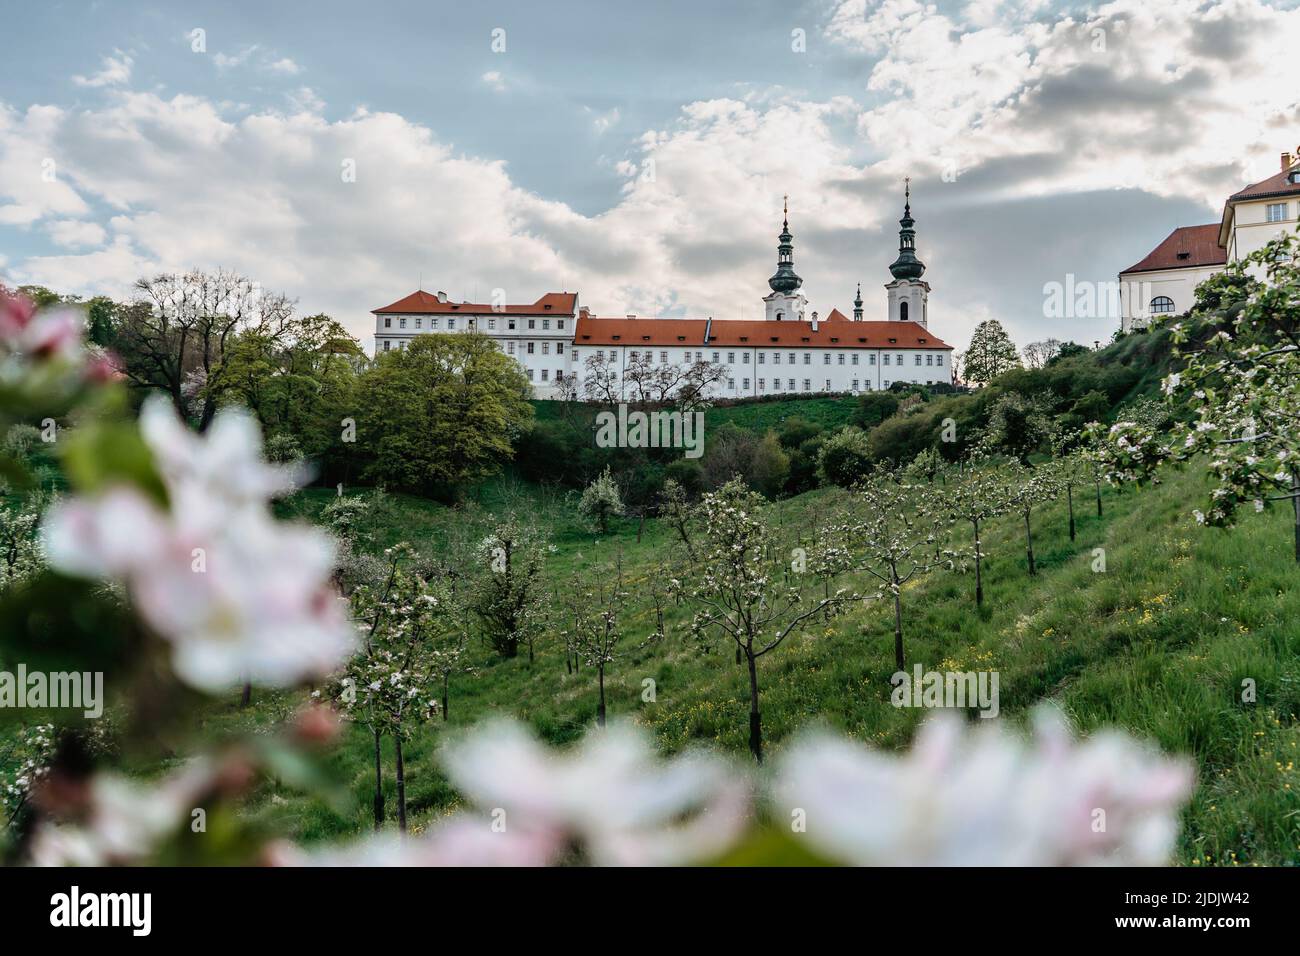 Vue sur le monastère de Strahov avec église de l'Assomption de la Sainte Vierge Marie, panorama de Prague, République tchèque, arbres de printemps en fleurs. Calme romantique Banque D'Images